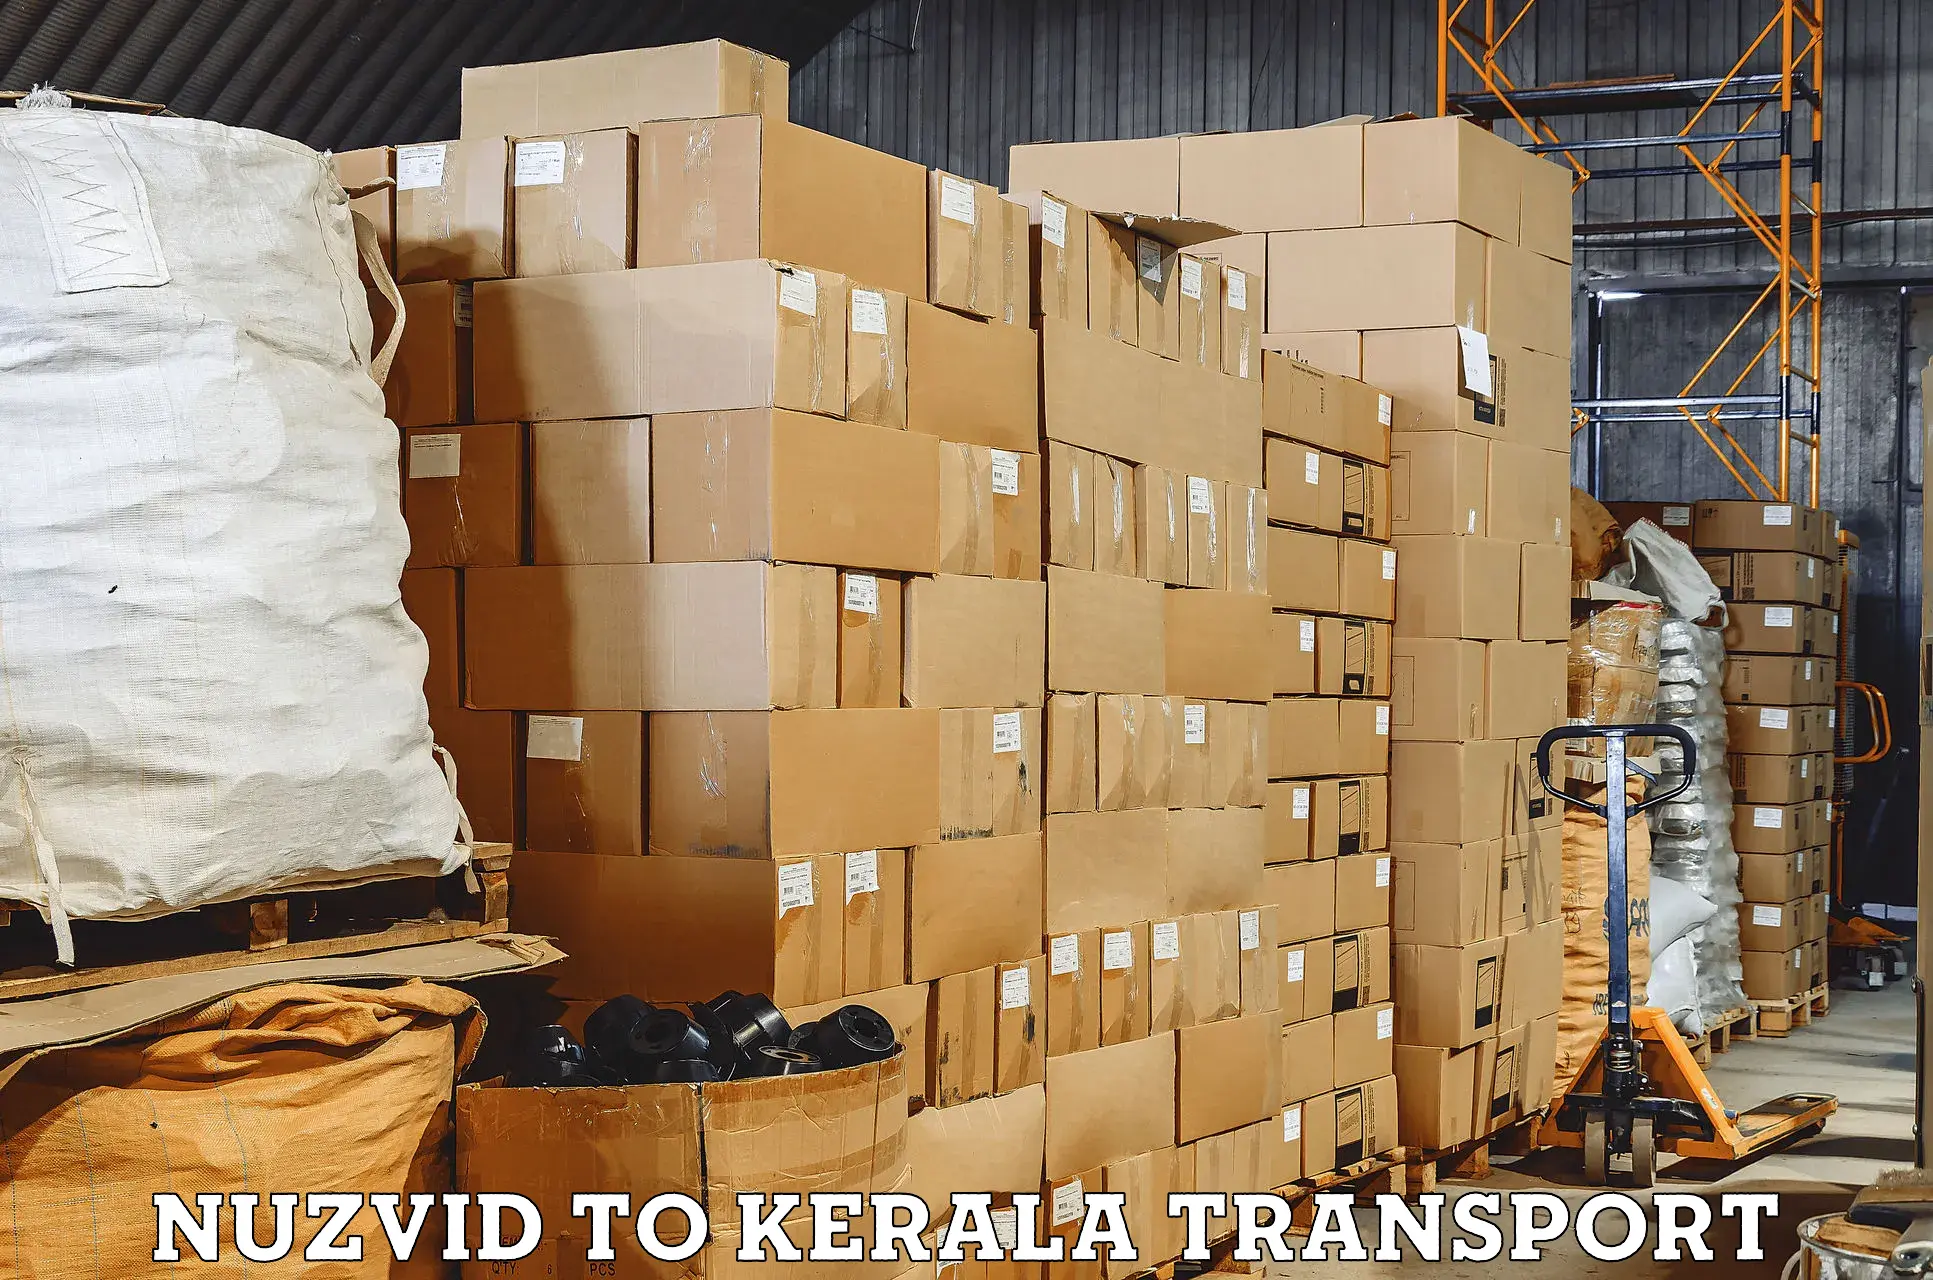 India truck logistics services Nuzvid to Kuttikol